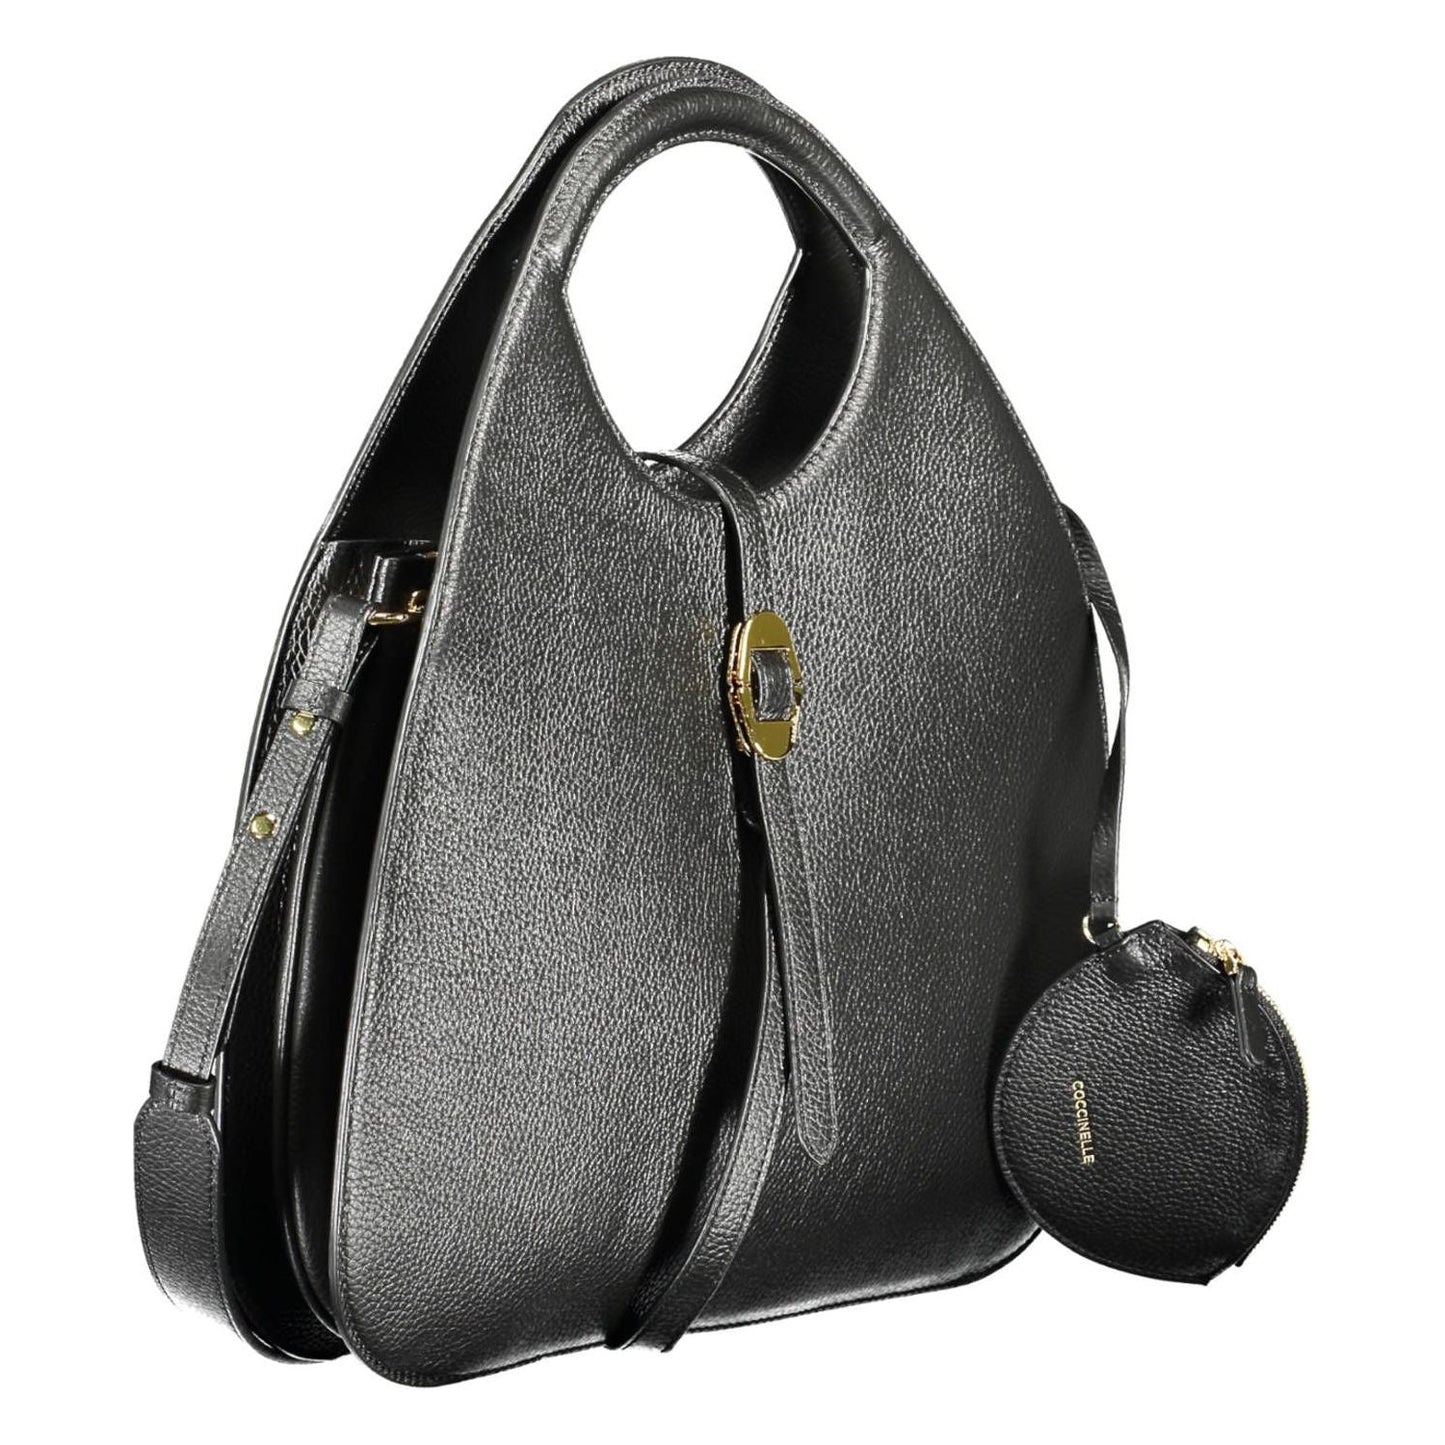 Coccinelle | Elegant Black Leather Handbag with Removable Strap| McRichard Designer Brands   